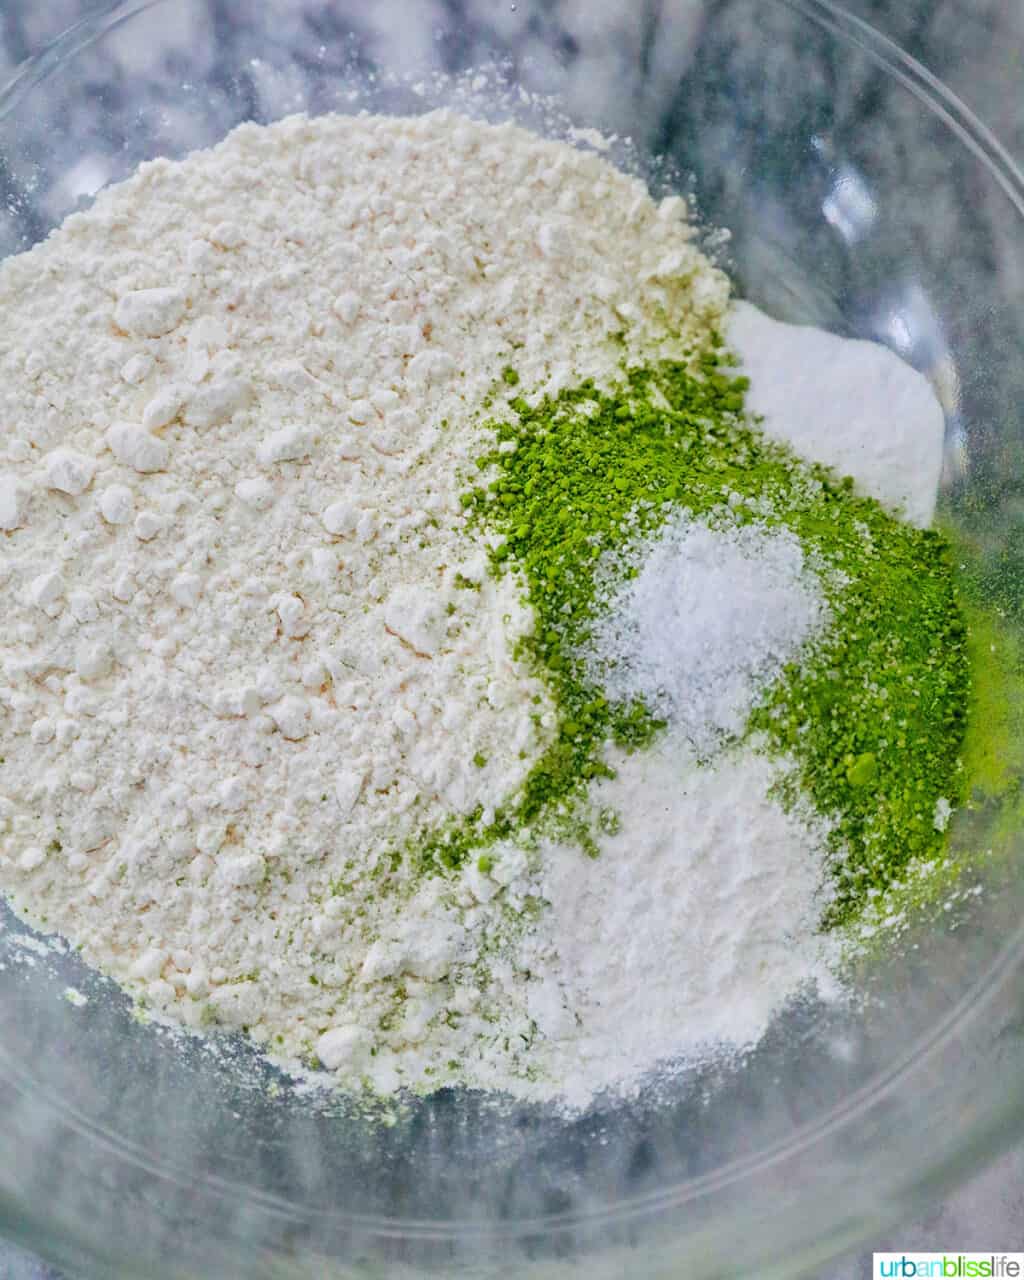 dry ingredients to make green tea cookies